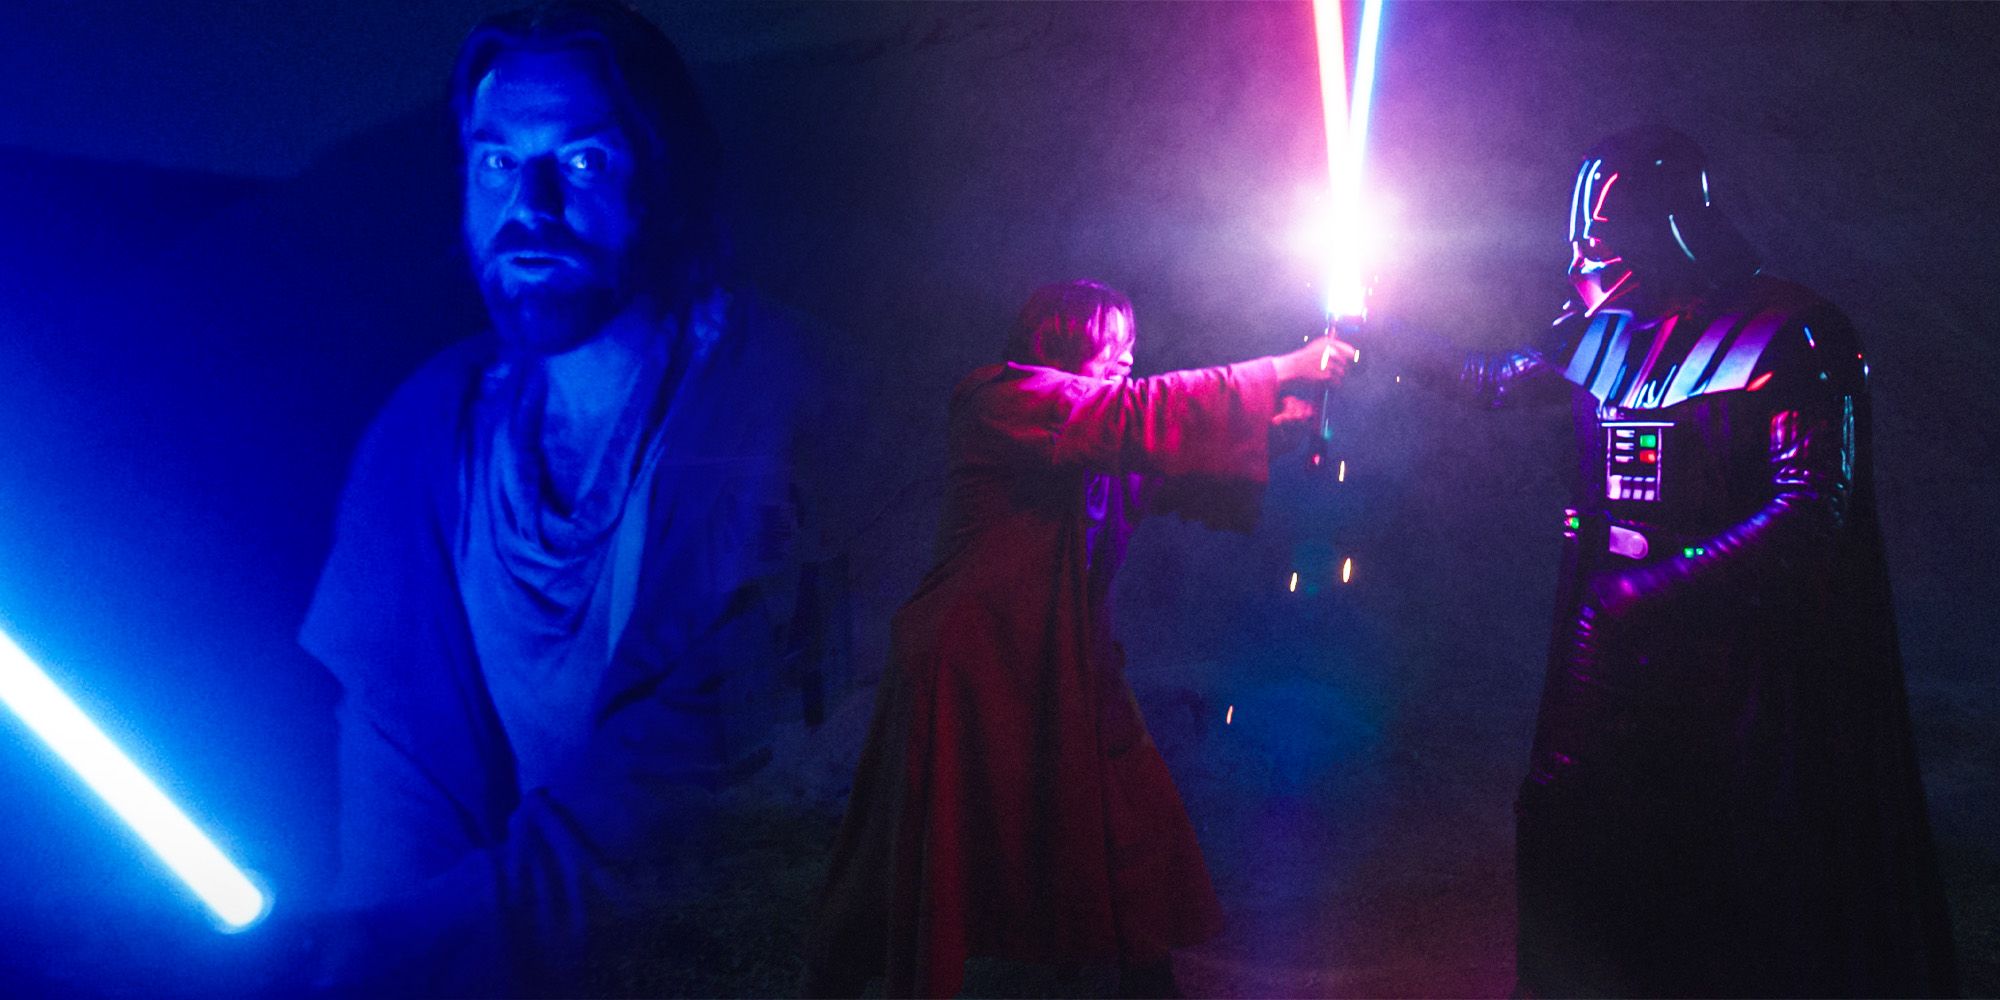 La forma de sable de luz de Obi-Wan explica en secreto por qué pierde ante Vader